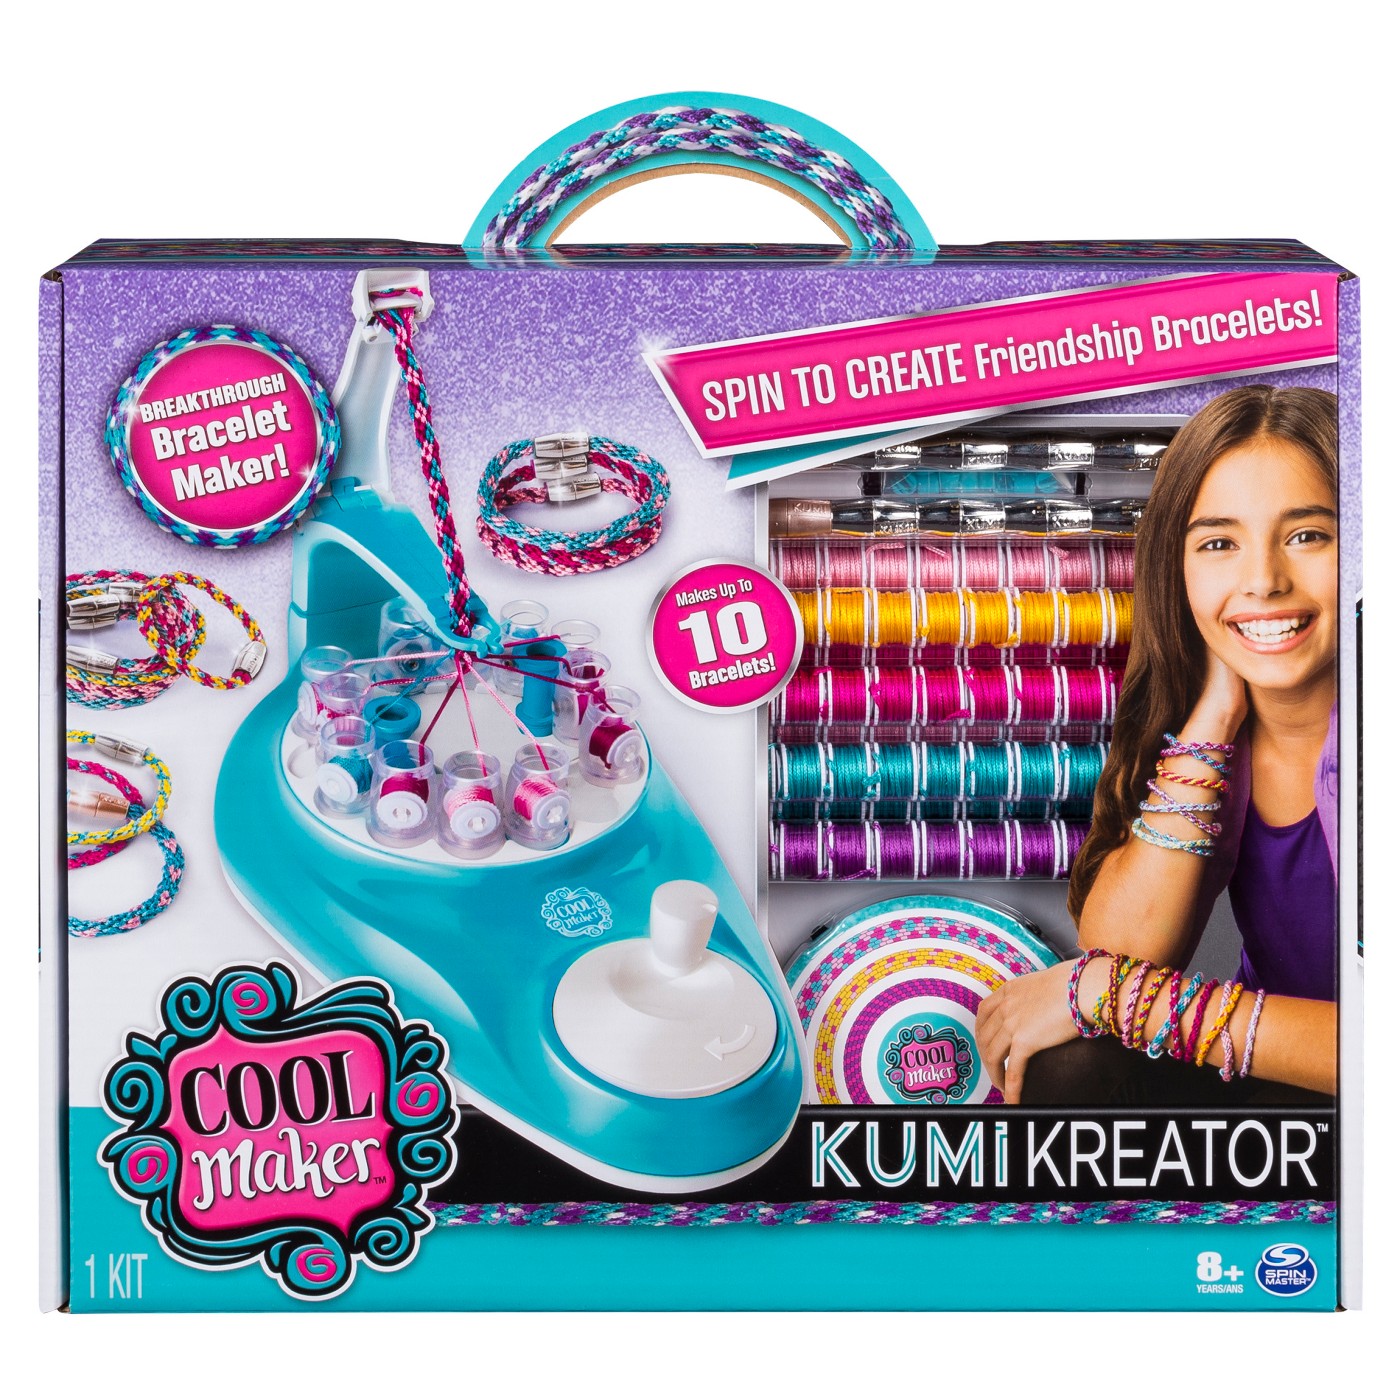 Cool Maker KumiKreator Friendship Bracelet Maker Activity Kit - image 1 of 7